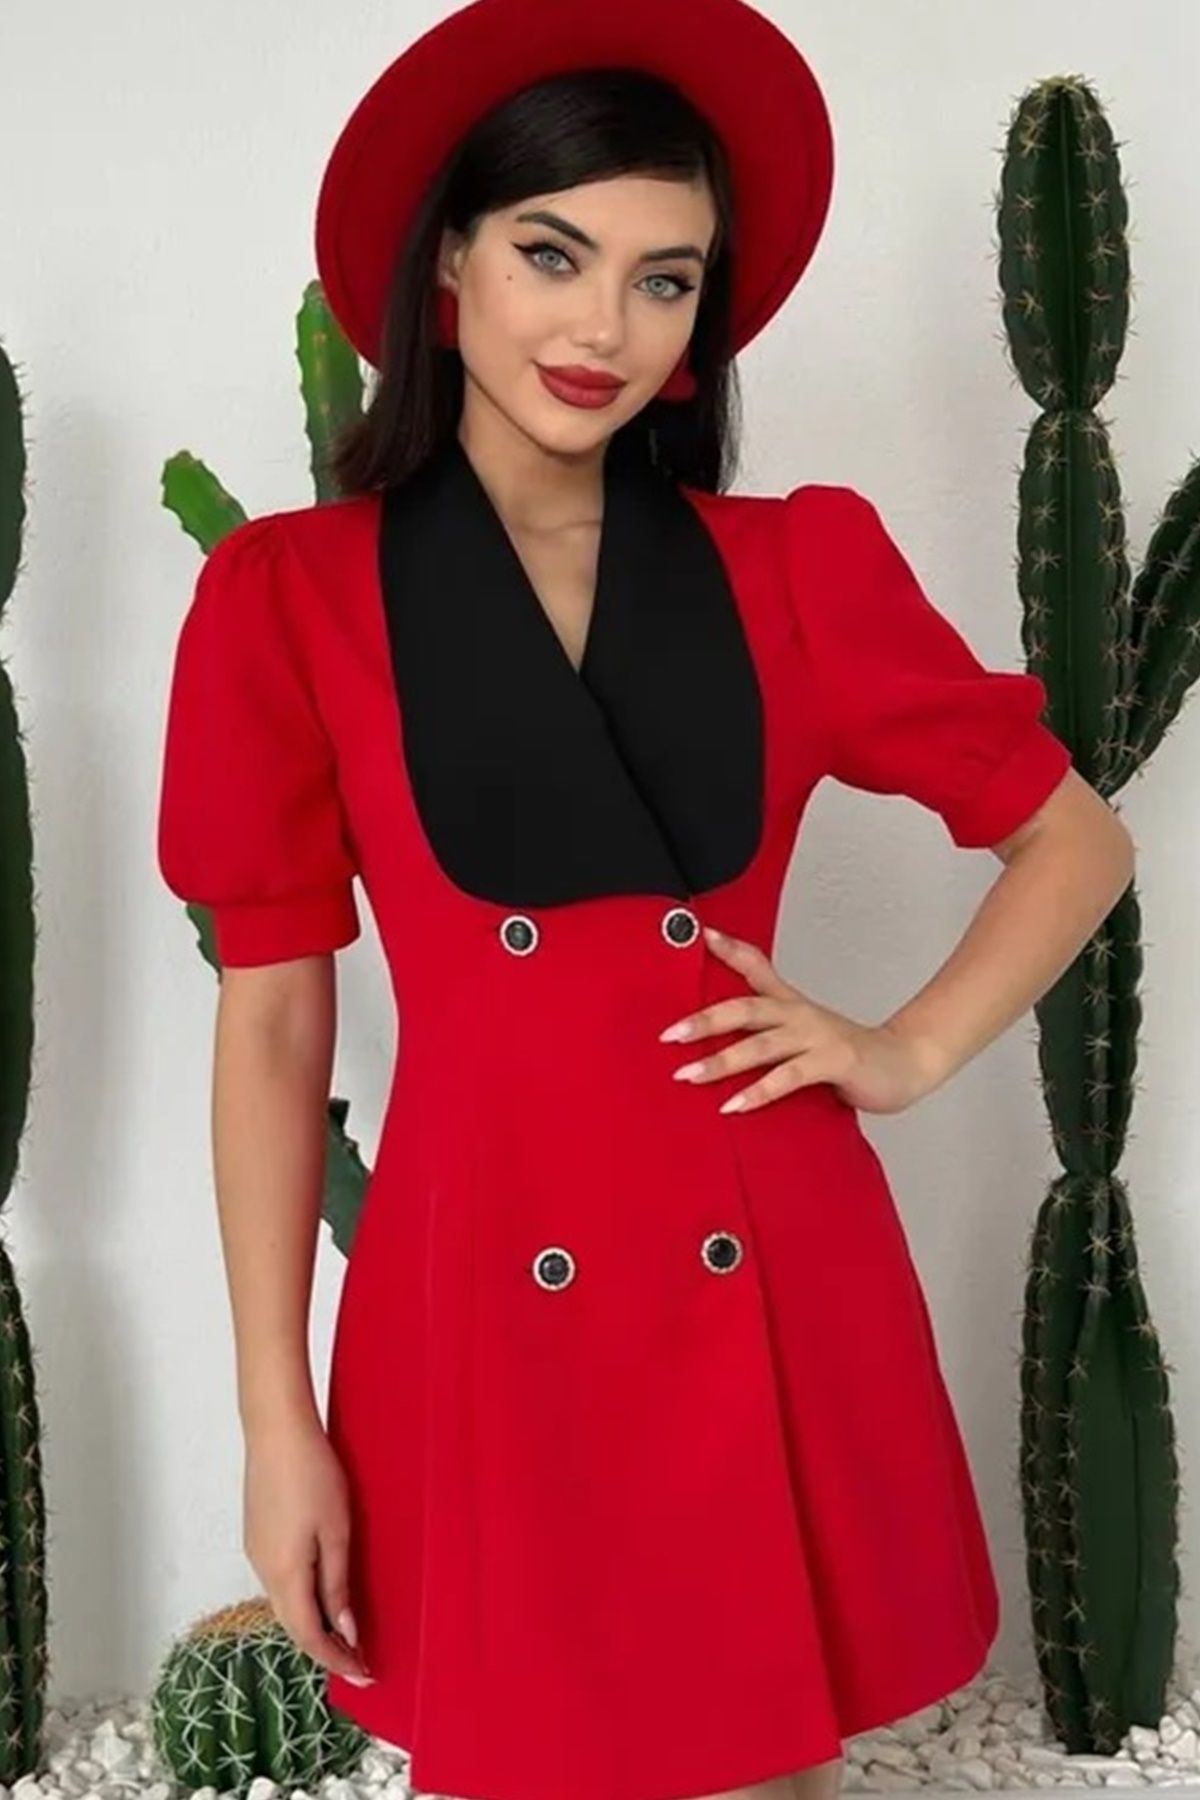 WOMAN VISION Kadın Atlas Kumaş Geniş Ceket Yakalı Kısa Kollu Kırmızı Ceket Elbise 154